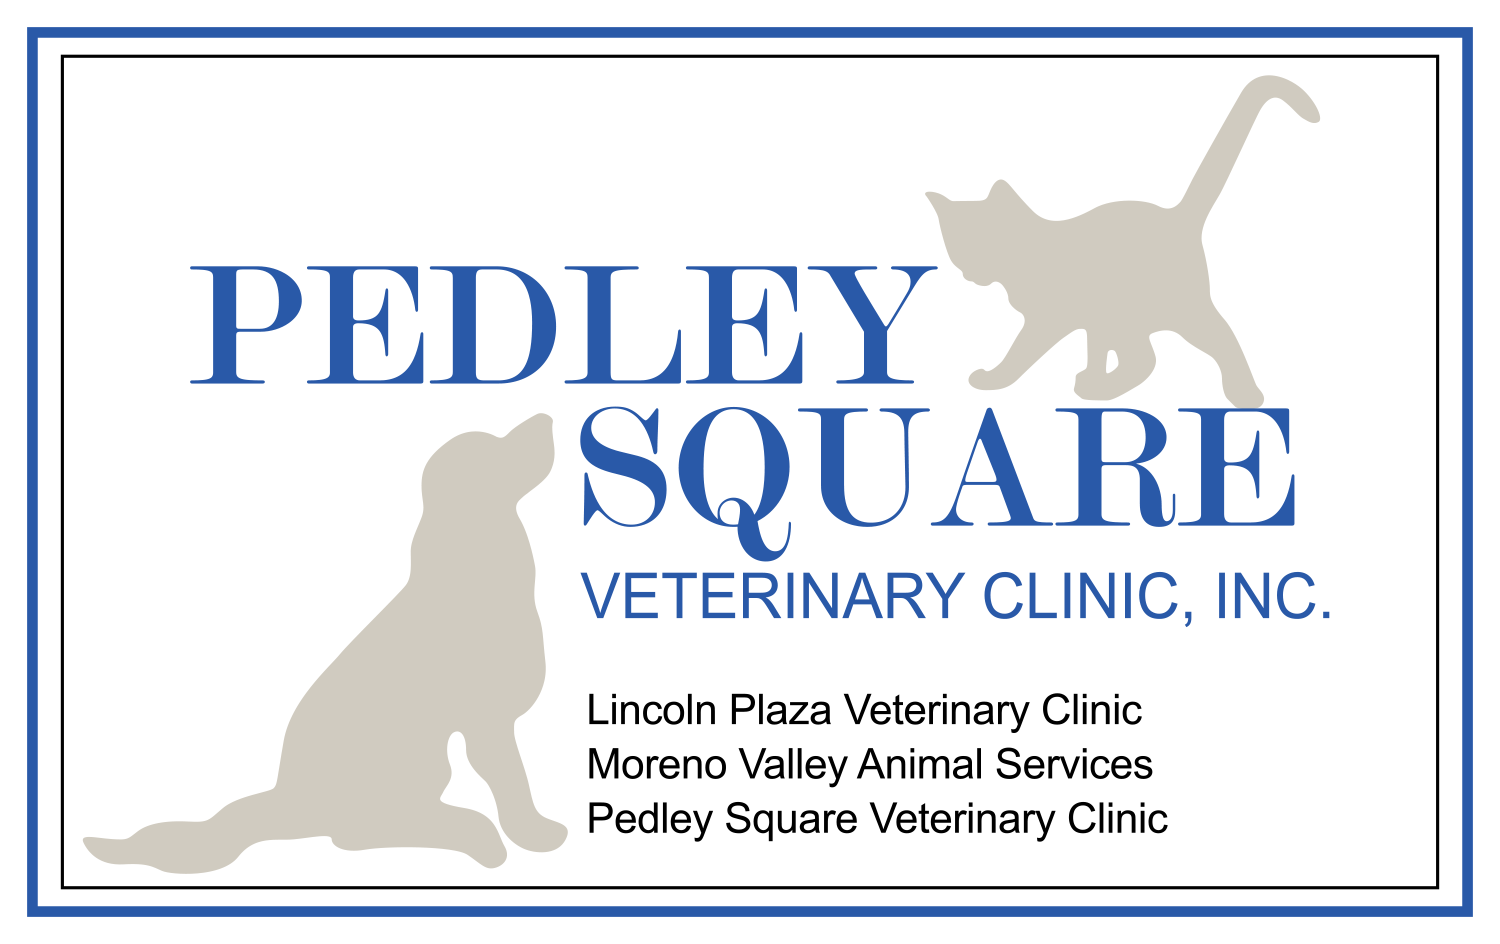 Pedley Square Veterinary Clinic